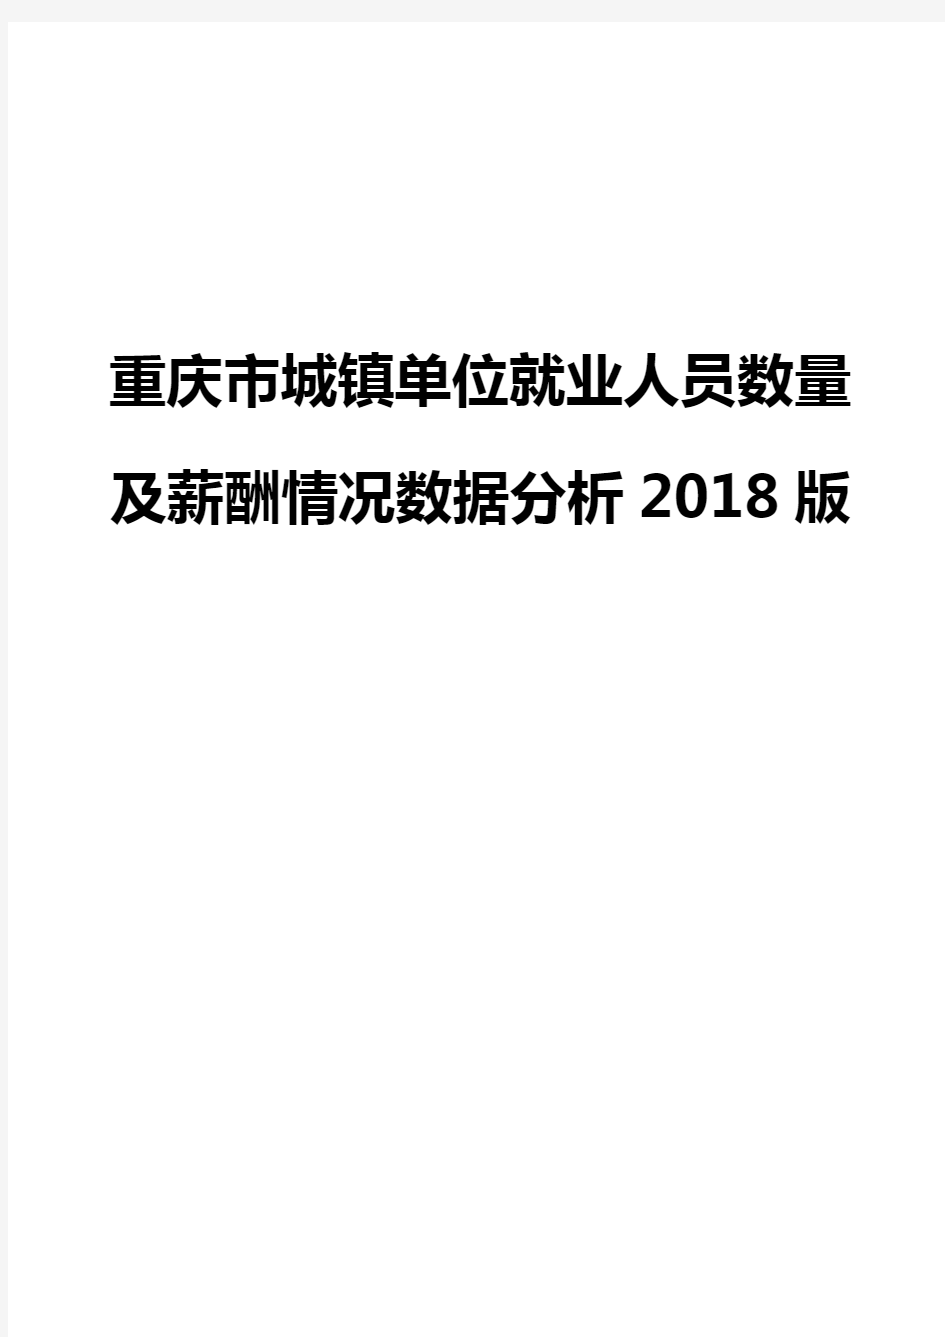 重庆市城镇单位就业人员数量及薪酬情况数据分析2018版